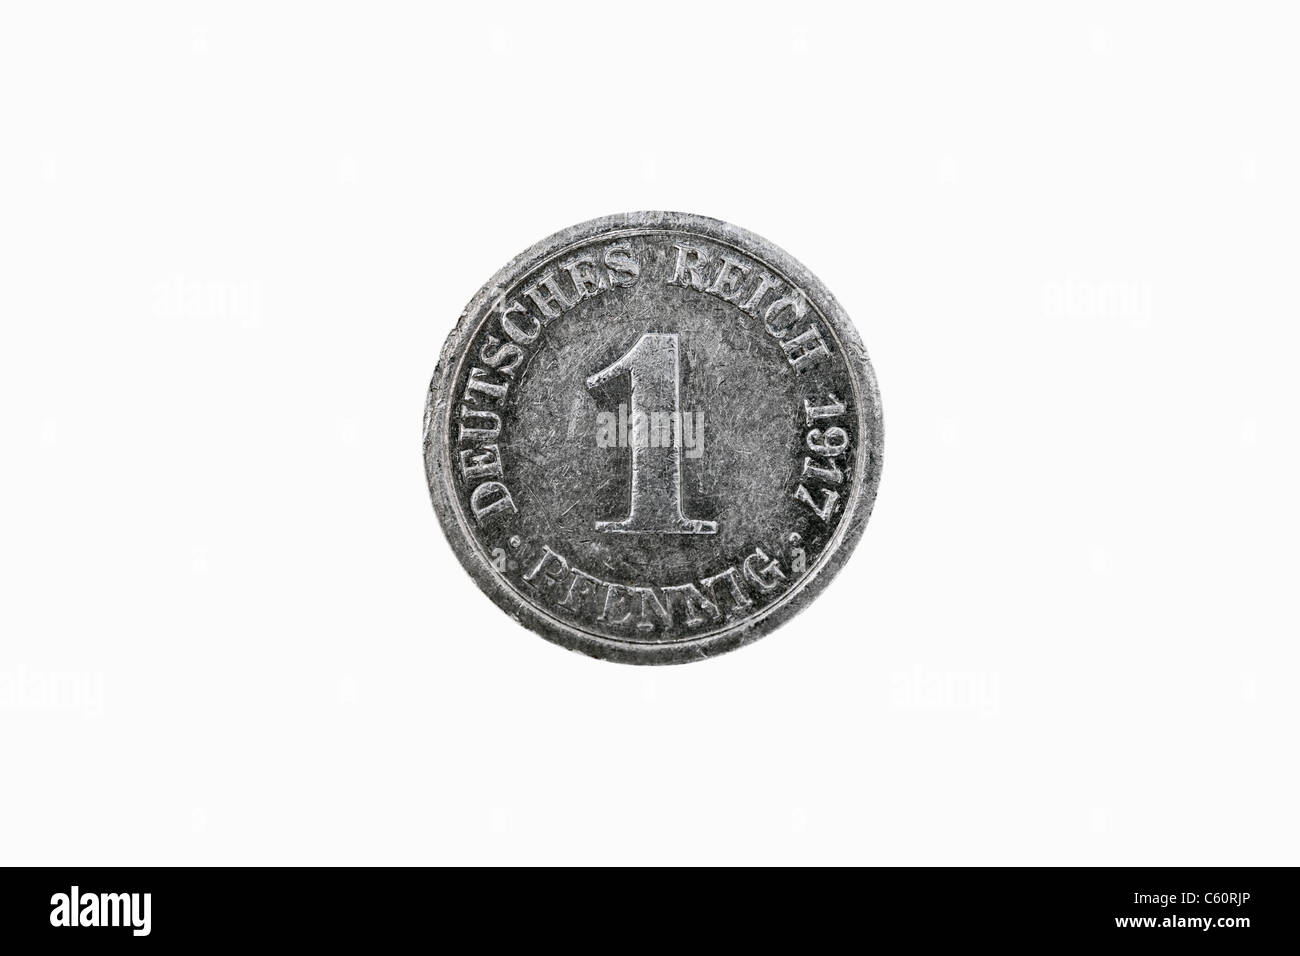 Foto Dettaglio di 1 pfennig medaglia del Reich tedesco a partire dall'anno 1917 Foto Stock